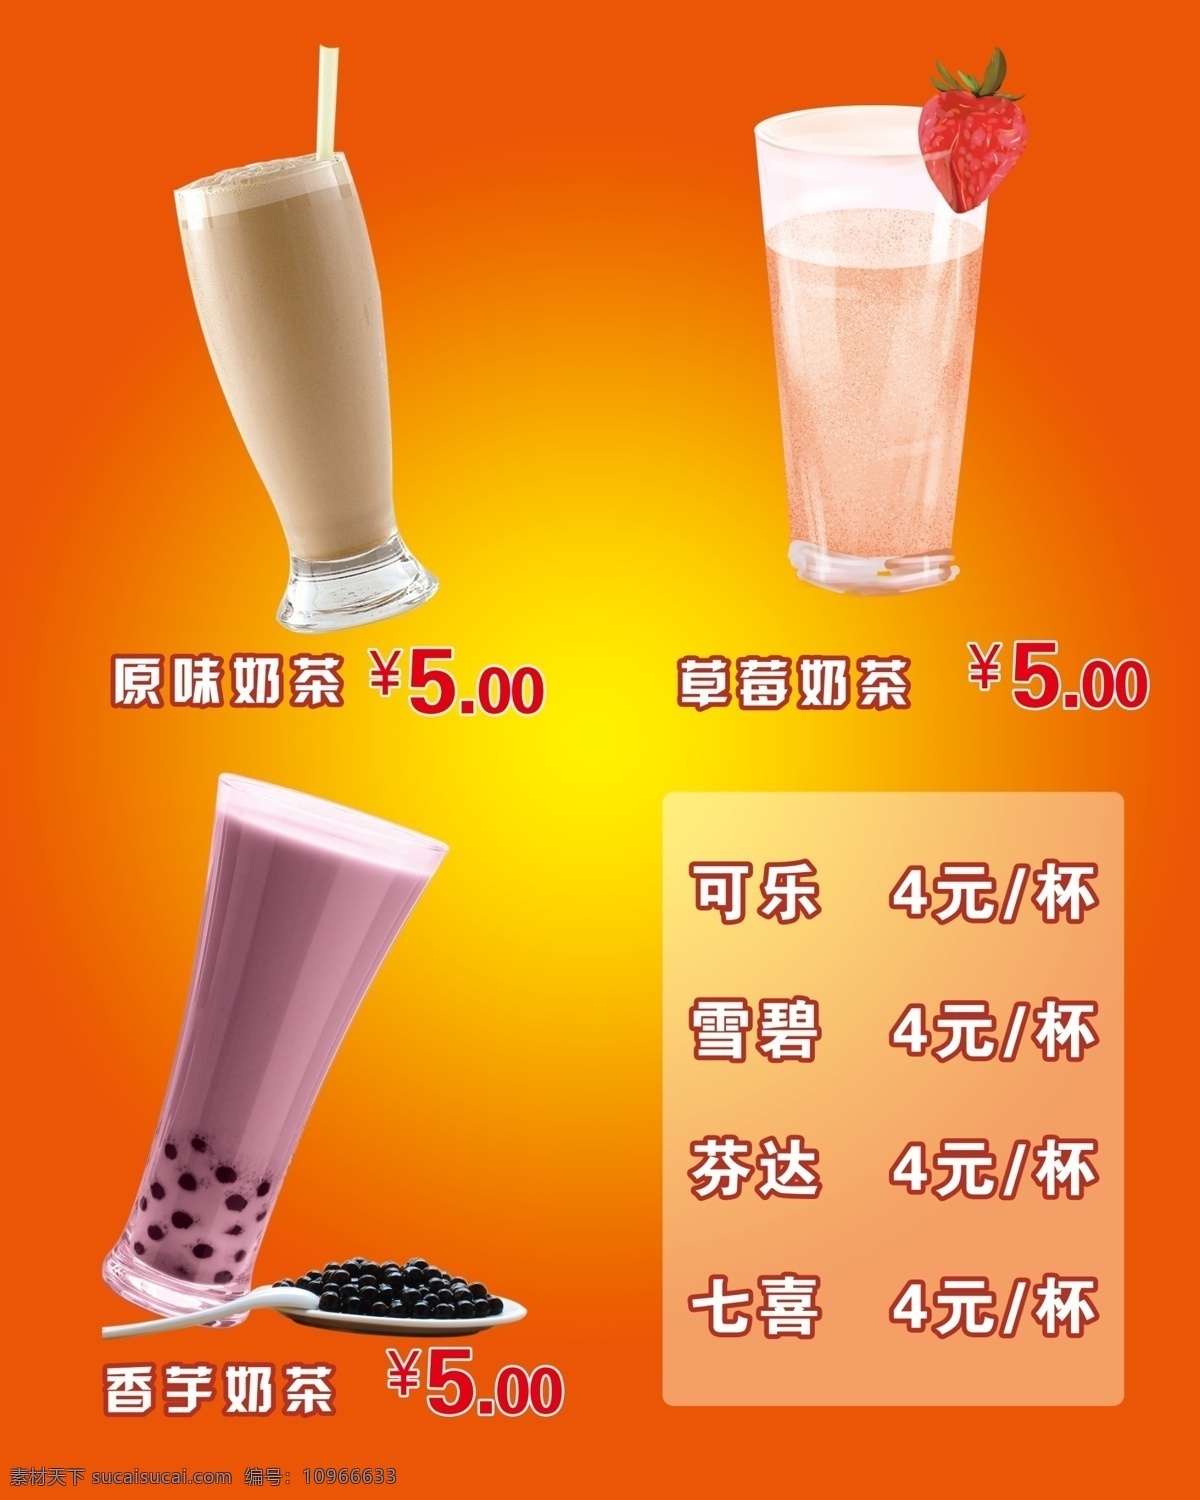 奶茶 价格表 橙色 价格 灯片 海报